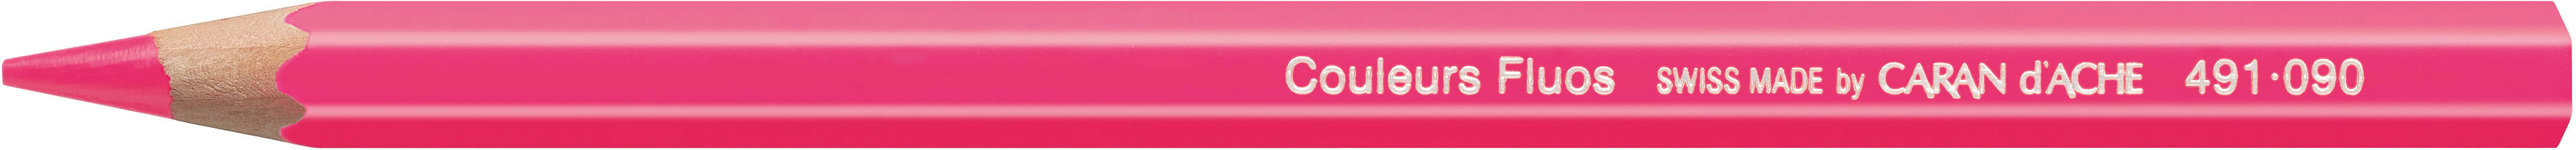 CARAN D'ACHE Crayon de Couleur Classic 491.090 rose fluo rose fluo